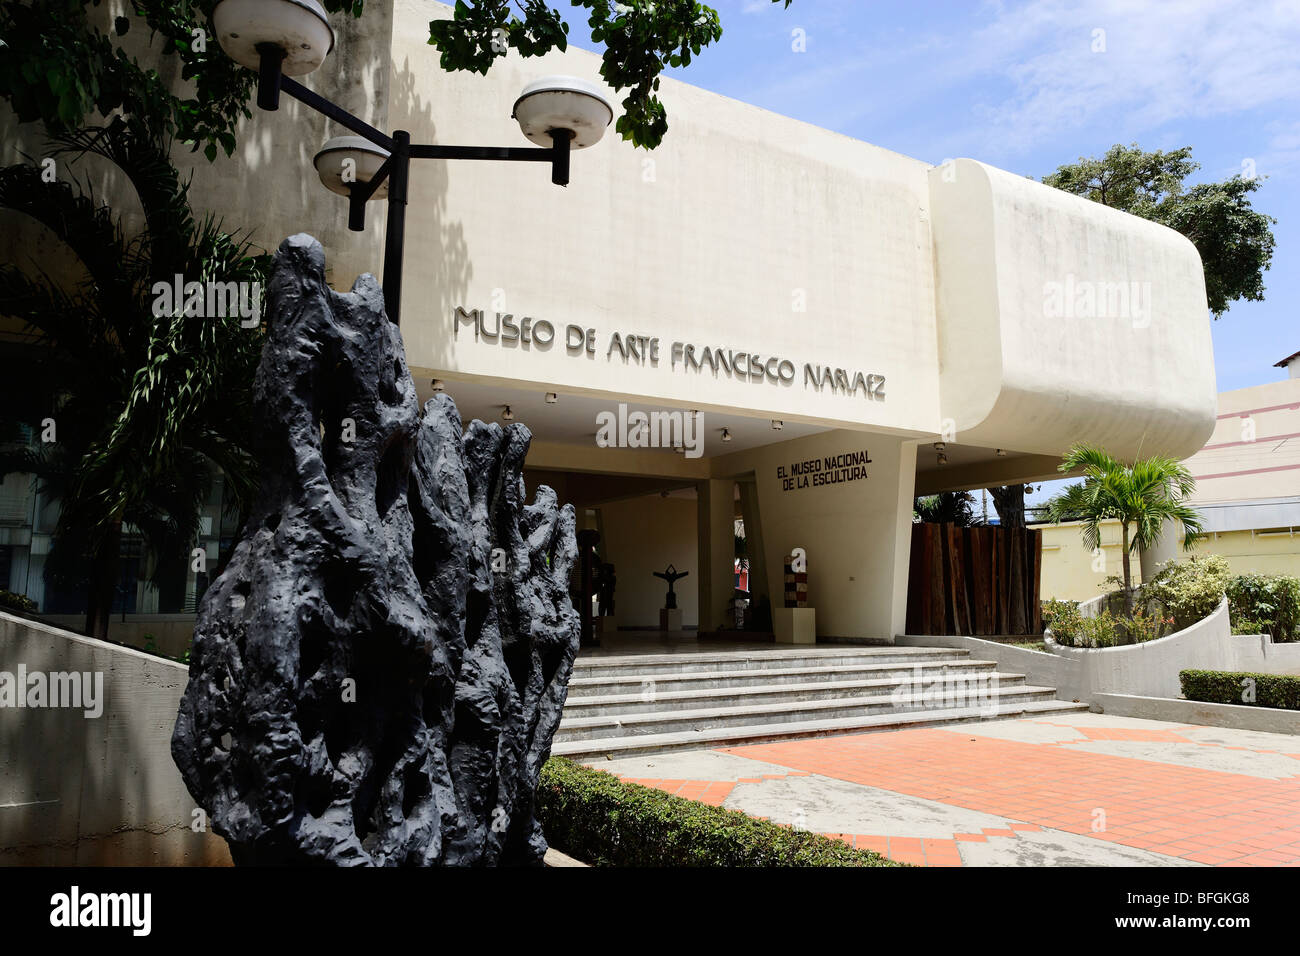 Museo de Arte Contempor neo Francisco Narv ez, Porlamar, Isla Margarita, Nueva Esparta, Venezuela Stock Photo